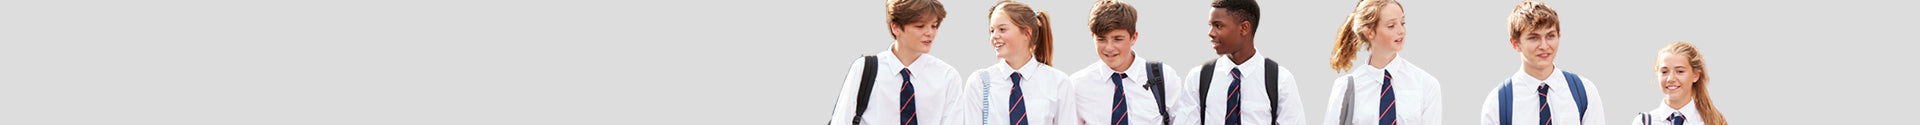 School Uniforms Banner